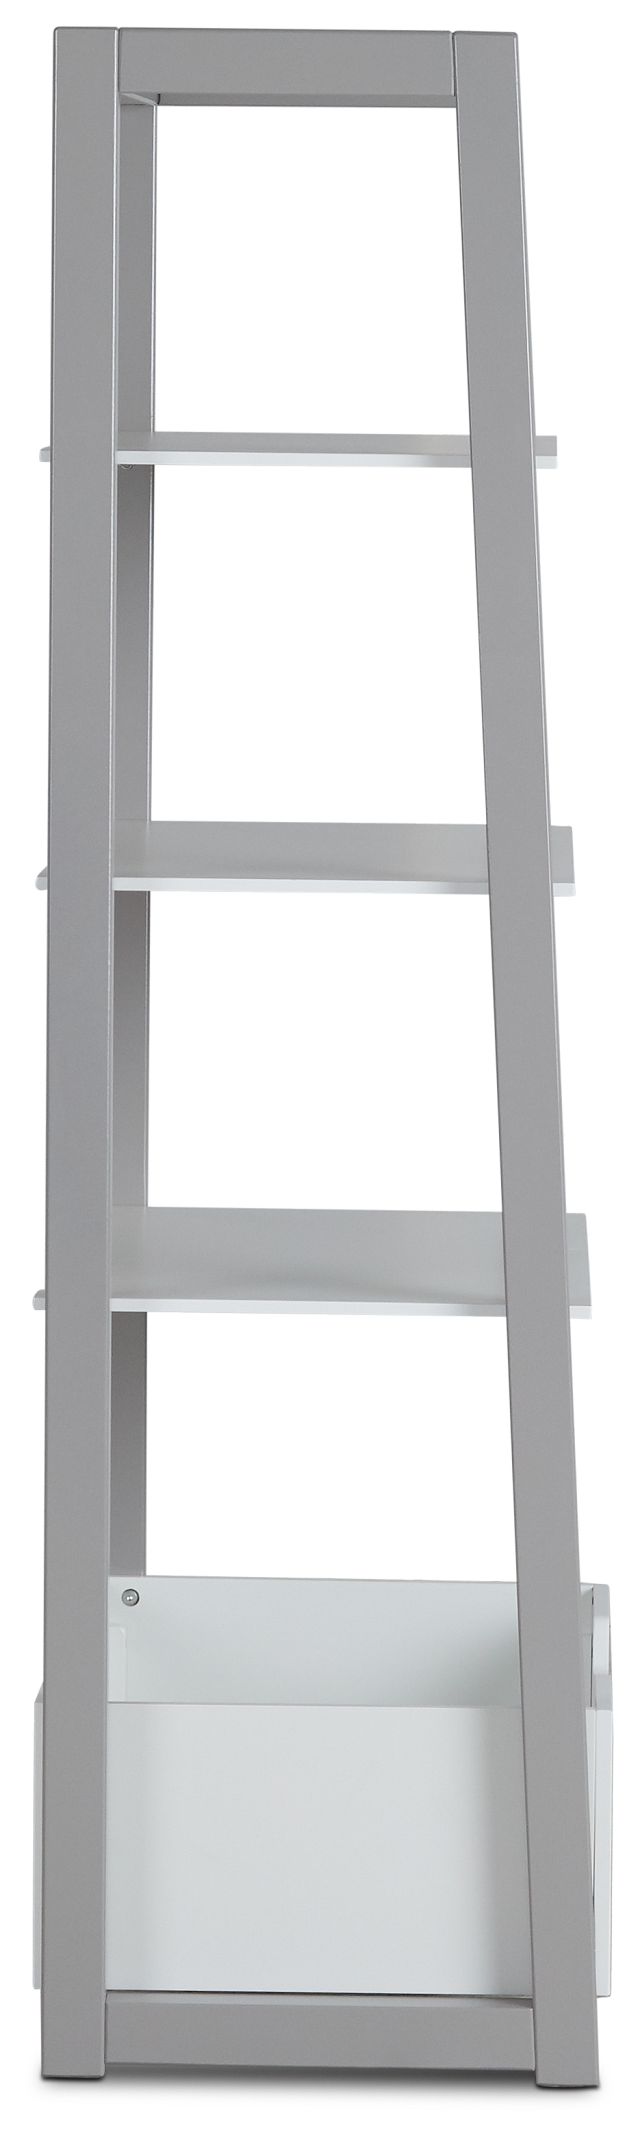 Gateway Two-tone Ladder Shelf